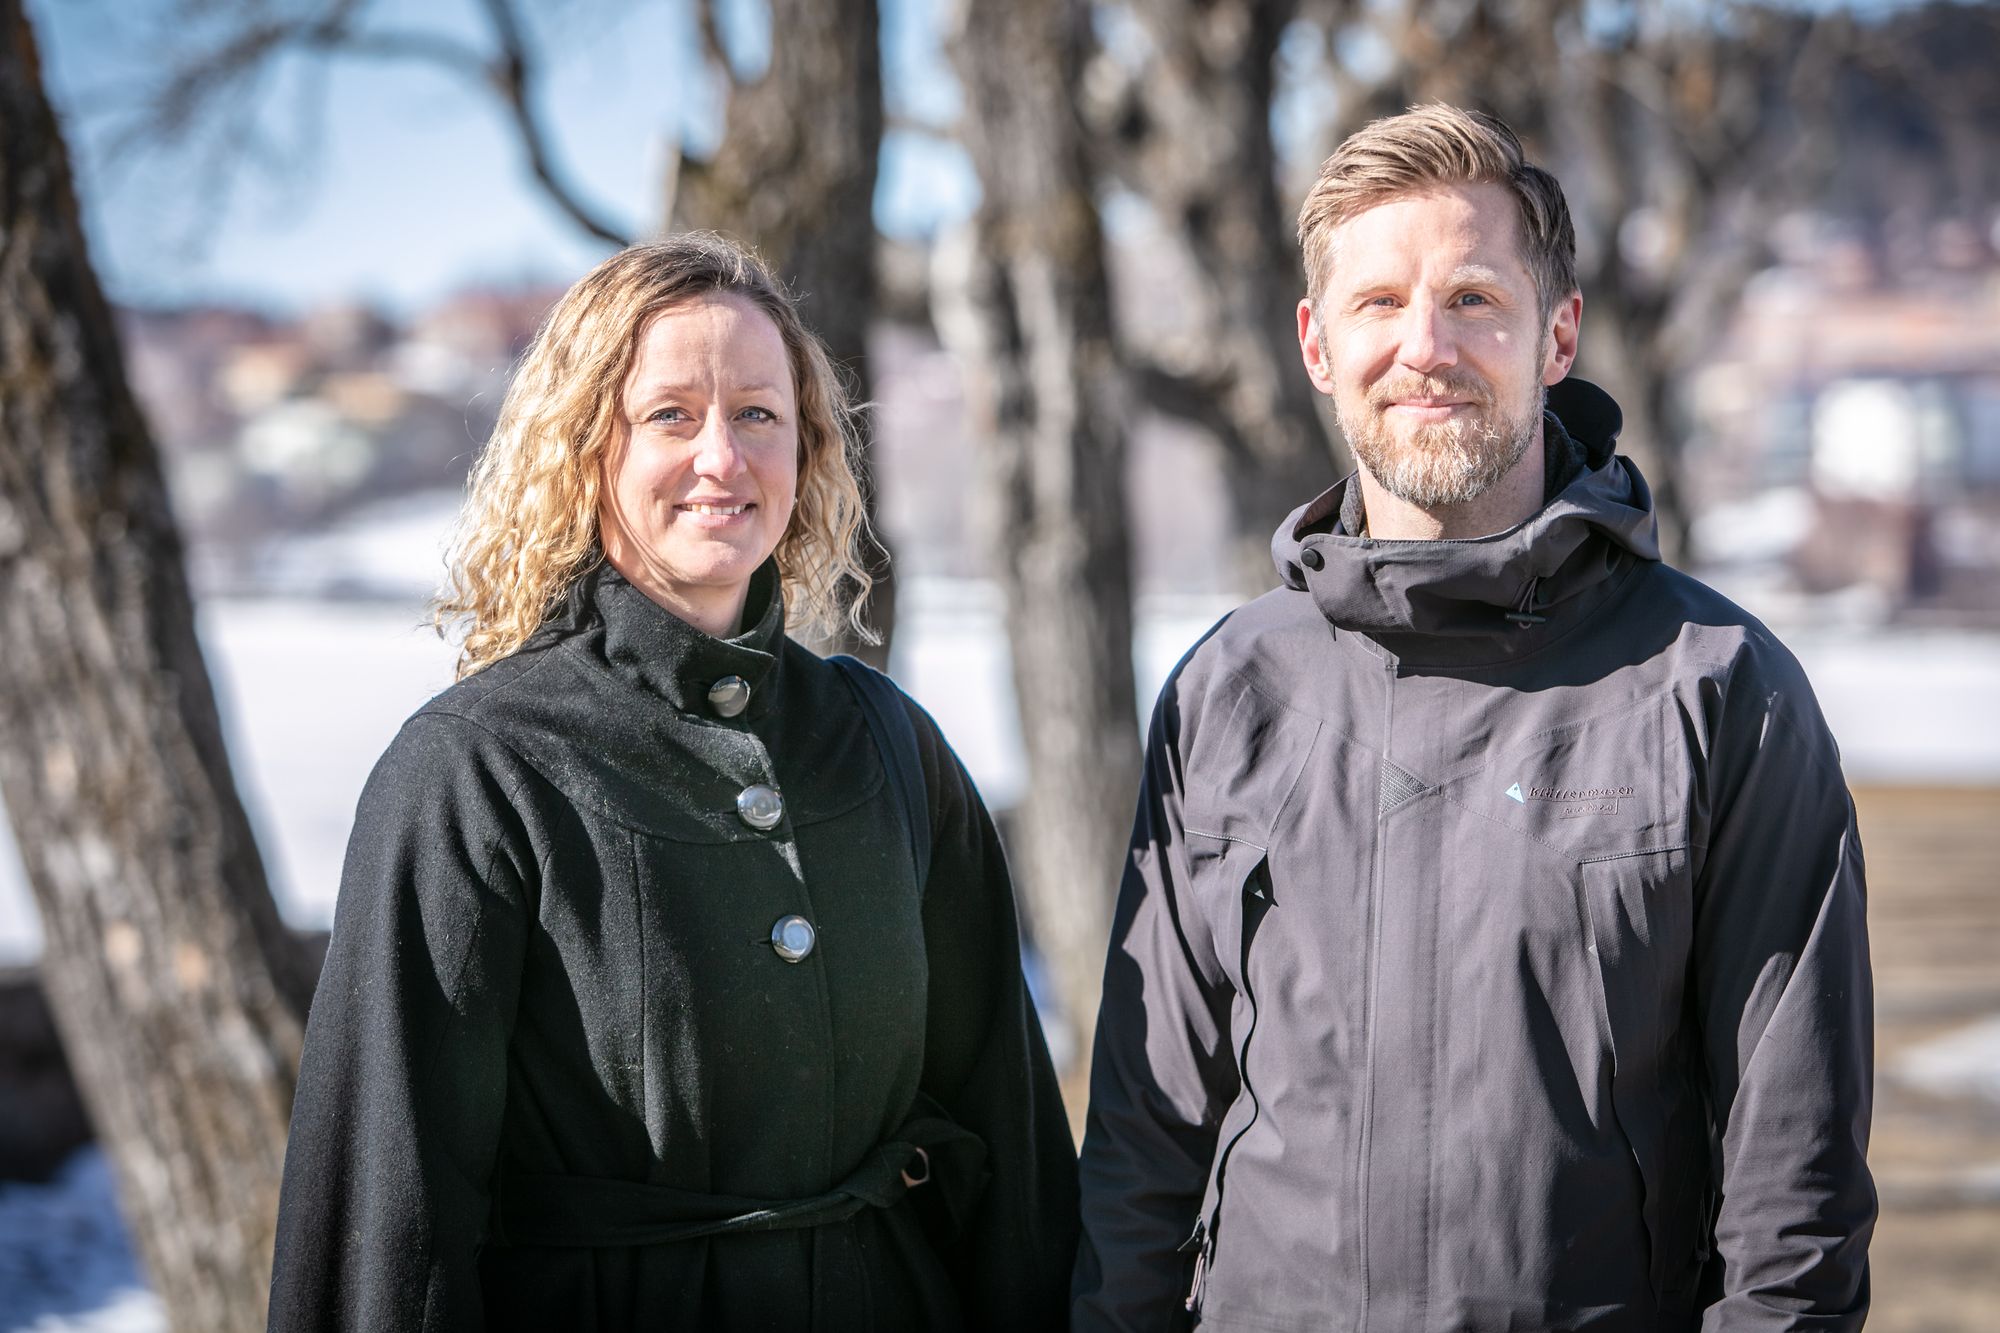 Chefer i Östersund, Kristina Berger och Christian Olsson